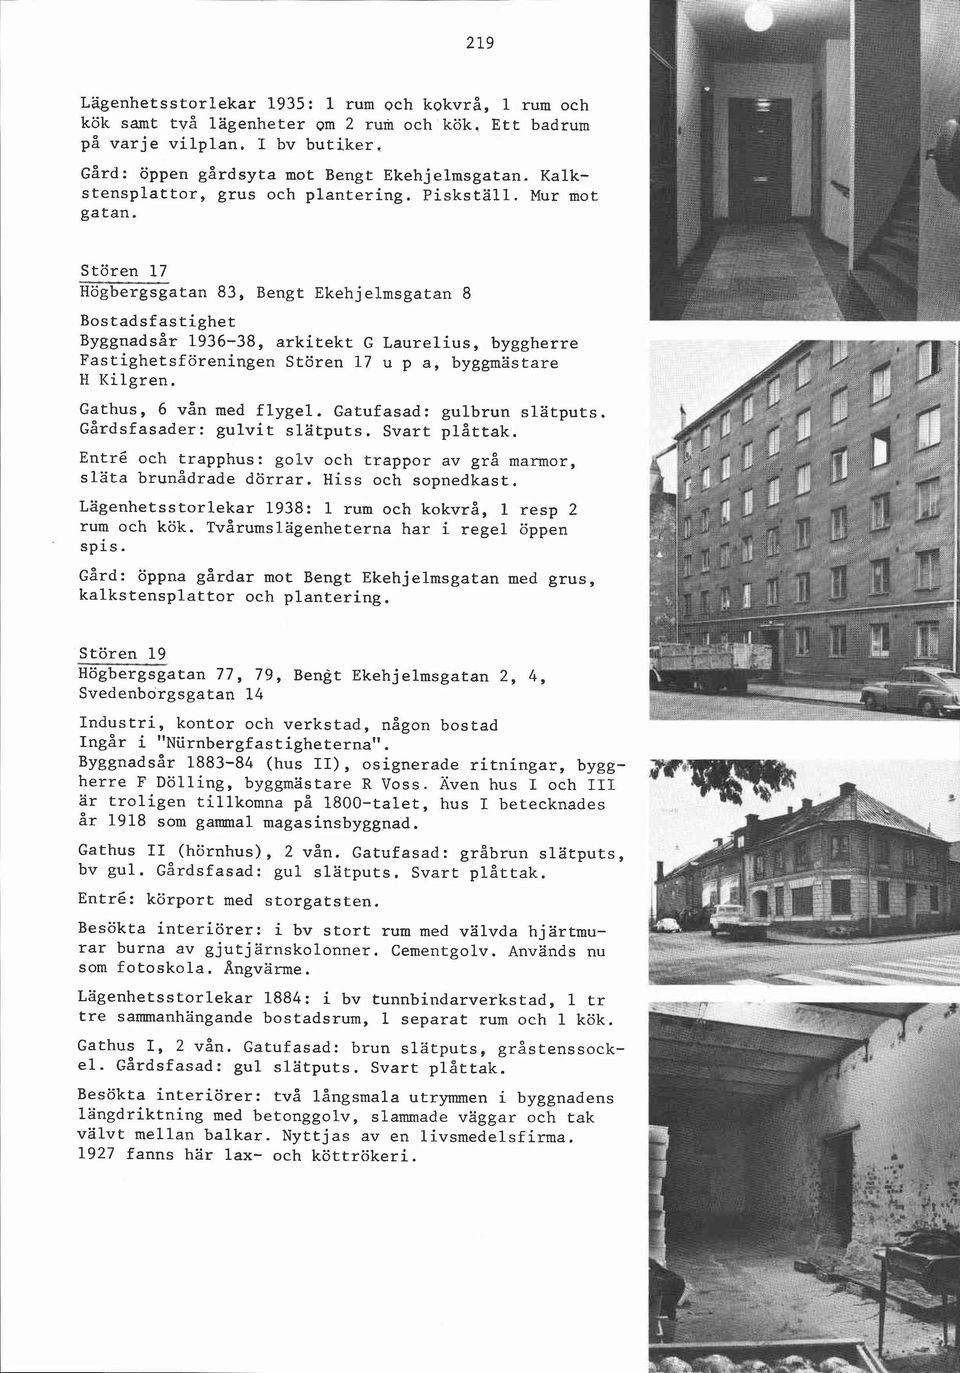 Stören 17 Högbergsgatan 83, Bengt Ekehjelmsgatan 8 ~~ggnadsår 1936-38, arkitekt G Laurelius, byggherre Fastighetsföreningen Stören 17 u p a, byggmästare H Kilgren. Gathus, 6 vån med flygel.